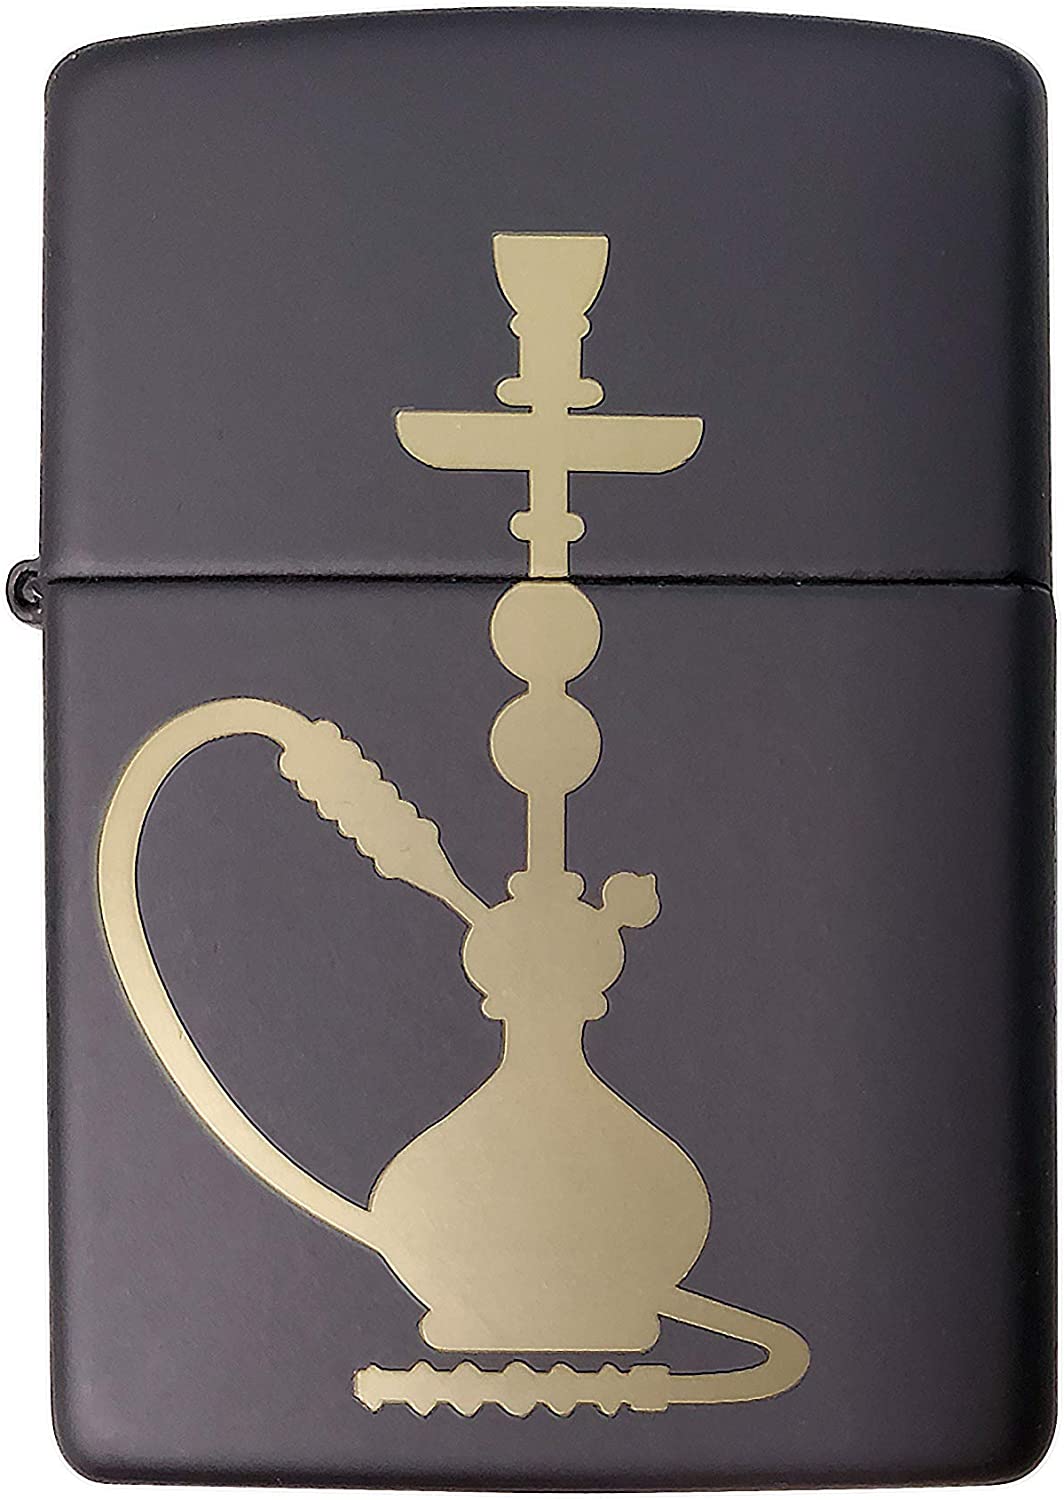 Chill Hookah Silhouette - Engraved Black Matte Zippo Lighter